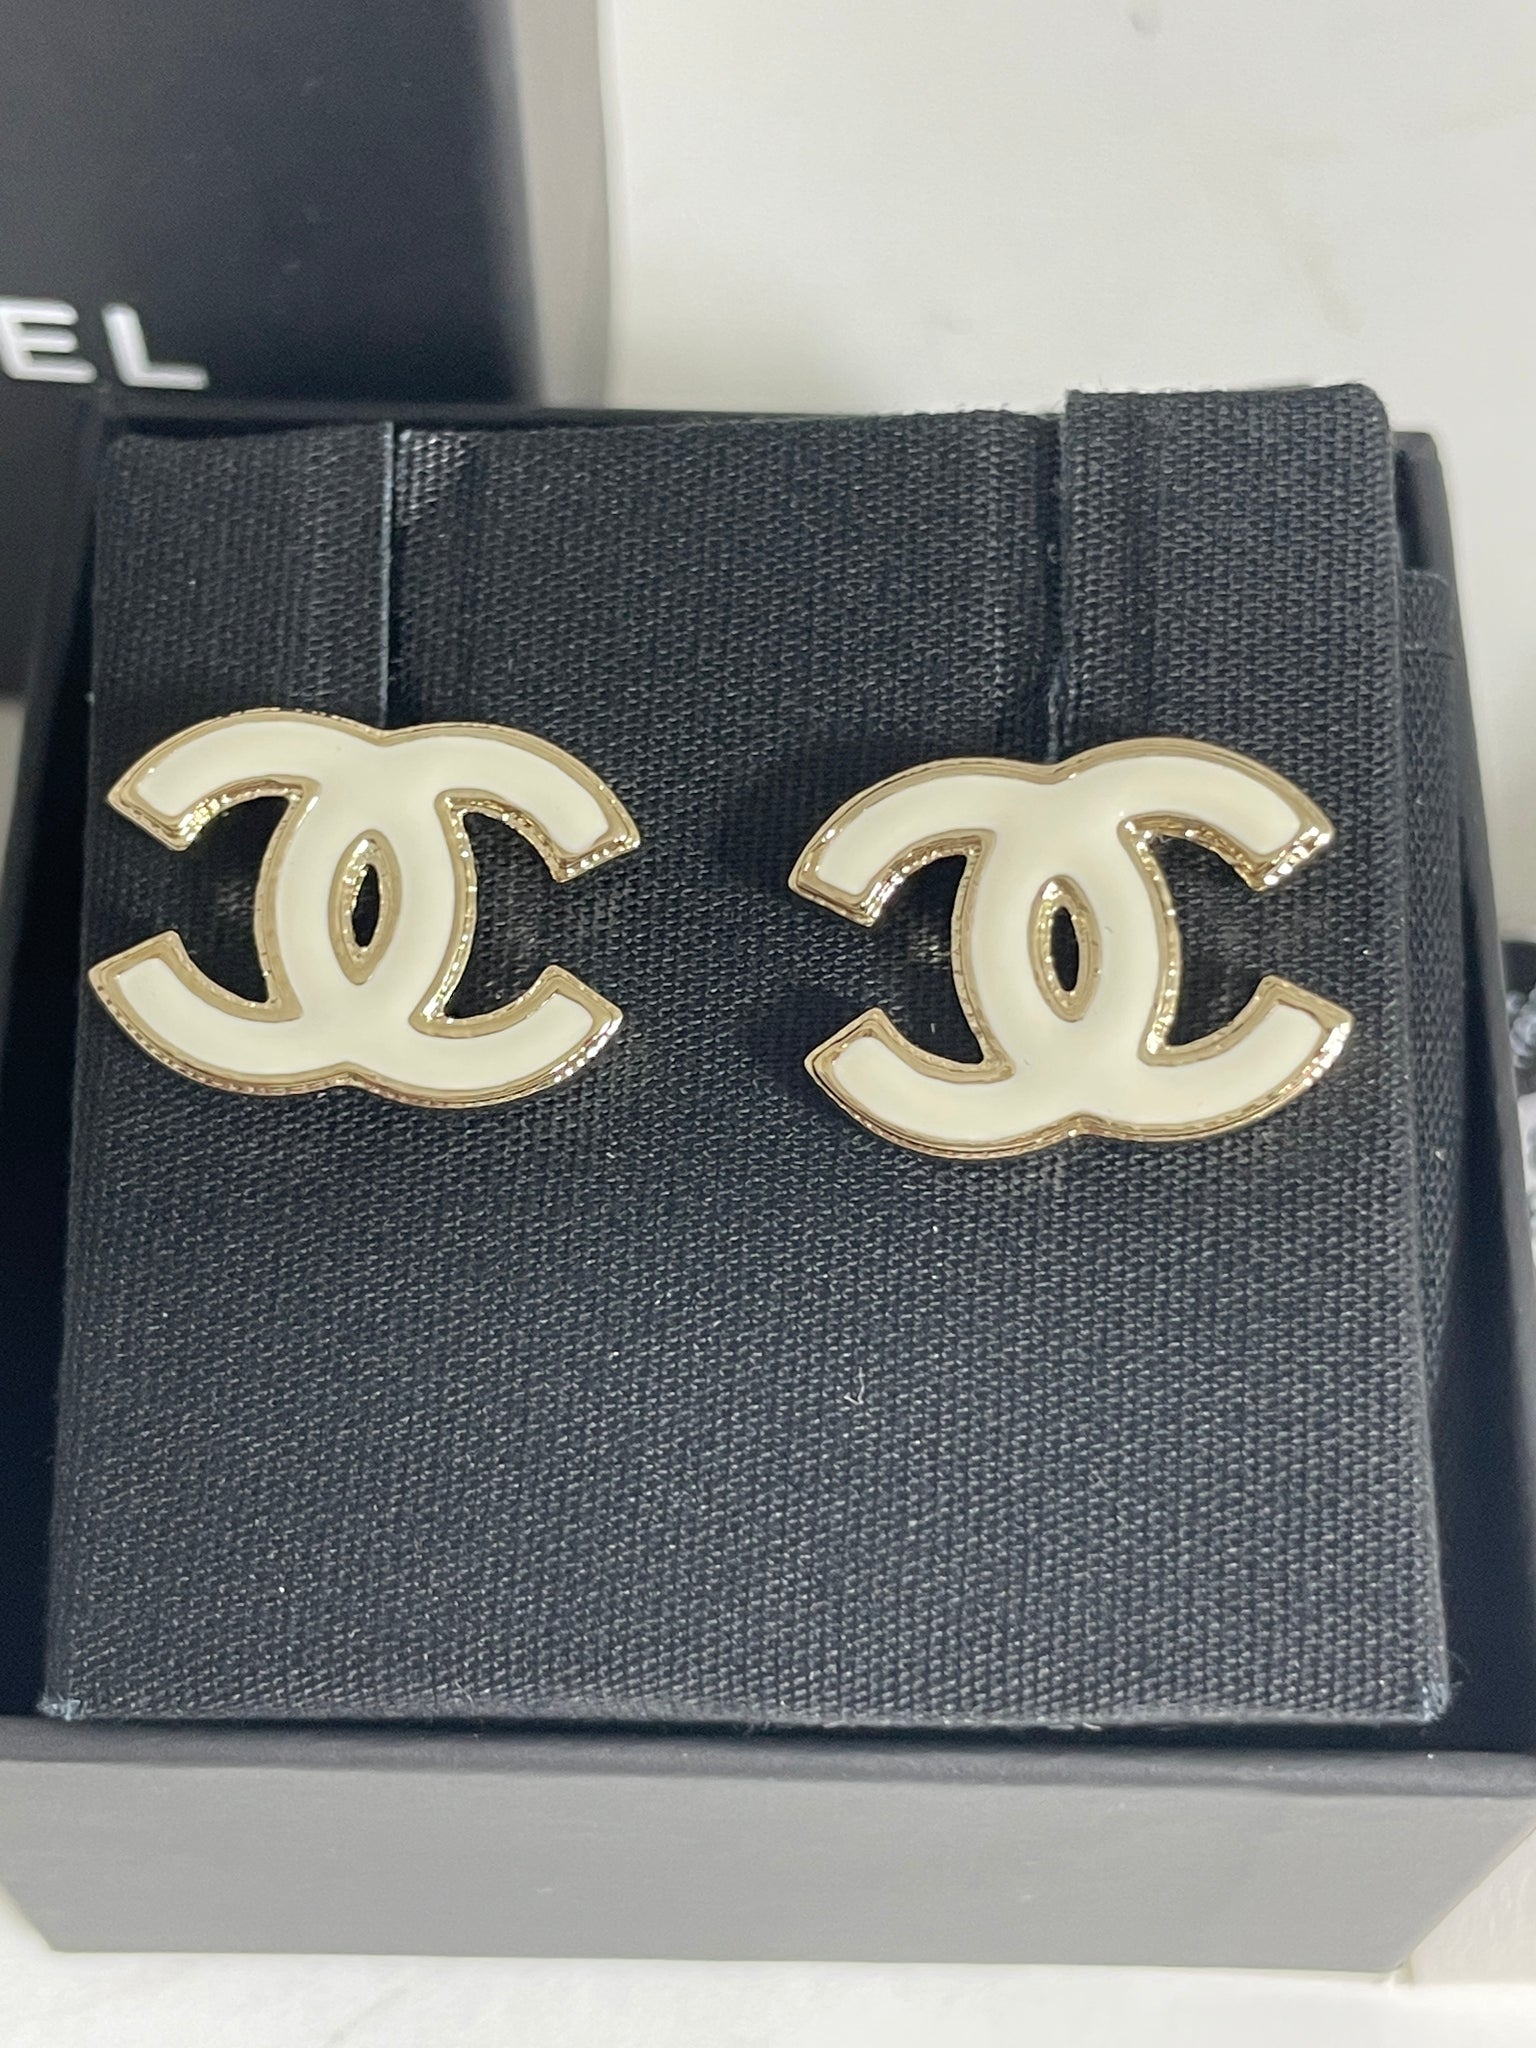 NEW 23C Chanel Interlocking CC Stud Earrings Gold White Enamel FULL SET w  Bag